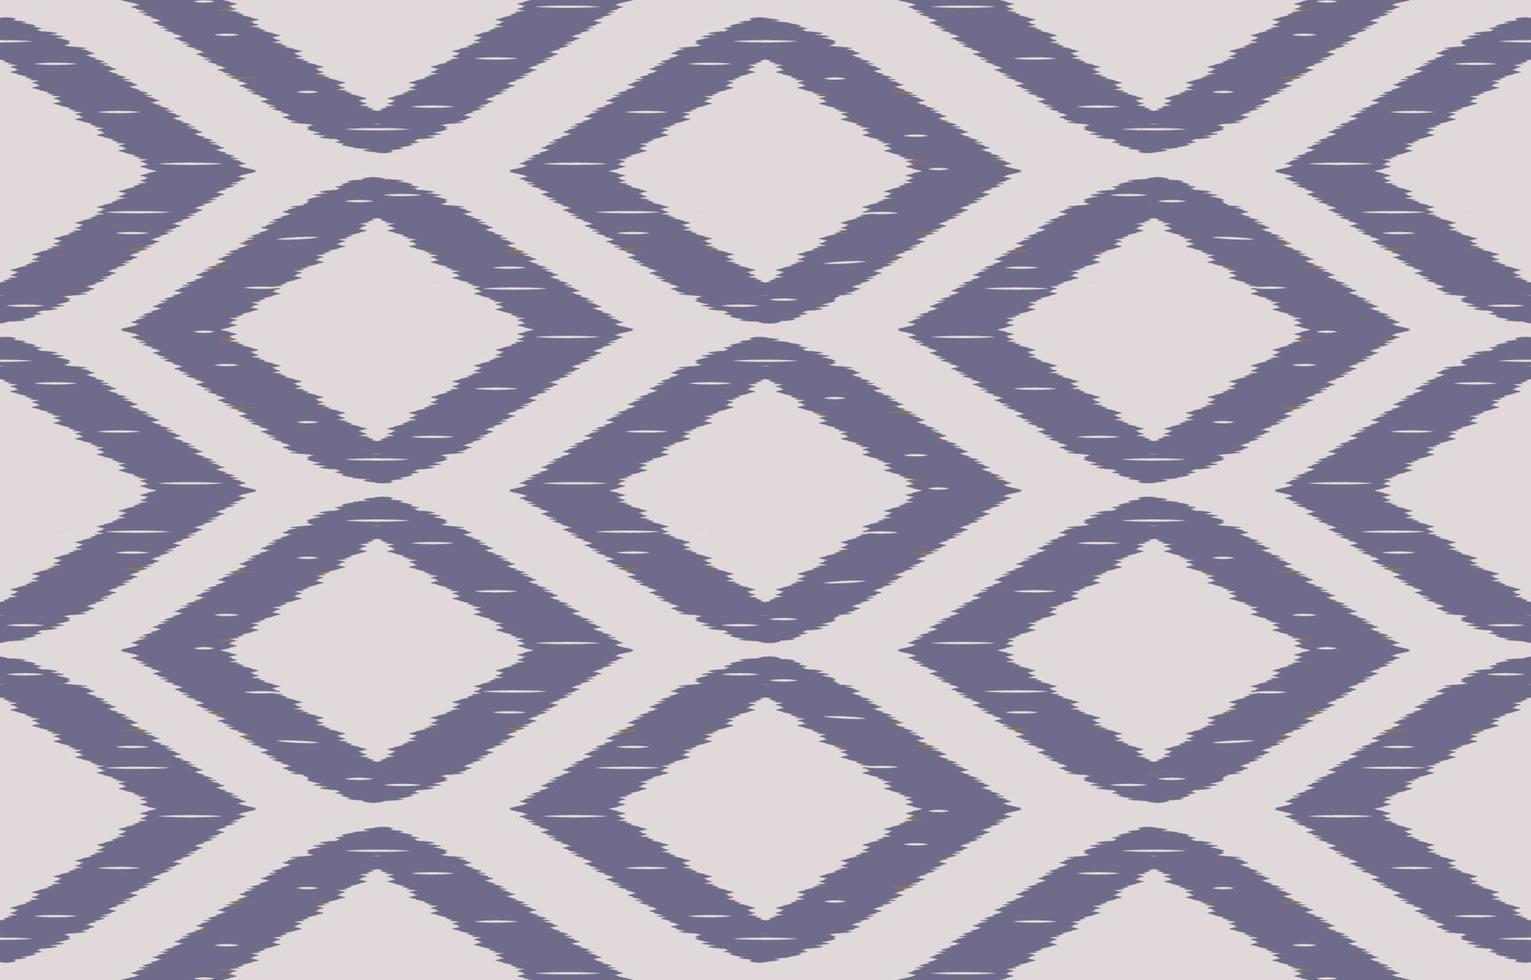 ikat gris de patrones sin fisuras geométrico étnico oriental bordado tradicional style.design para fondo, alfombra, estera, papel pintado, ropa, envoltura, batik, tela, ilustración vectorial. vector